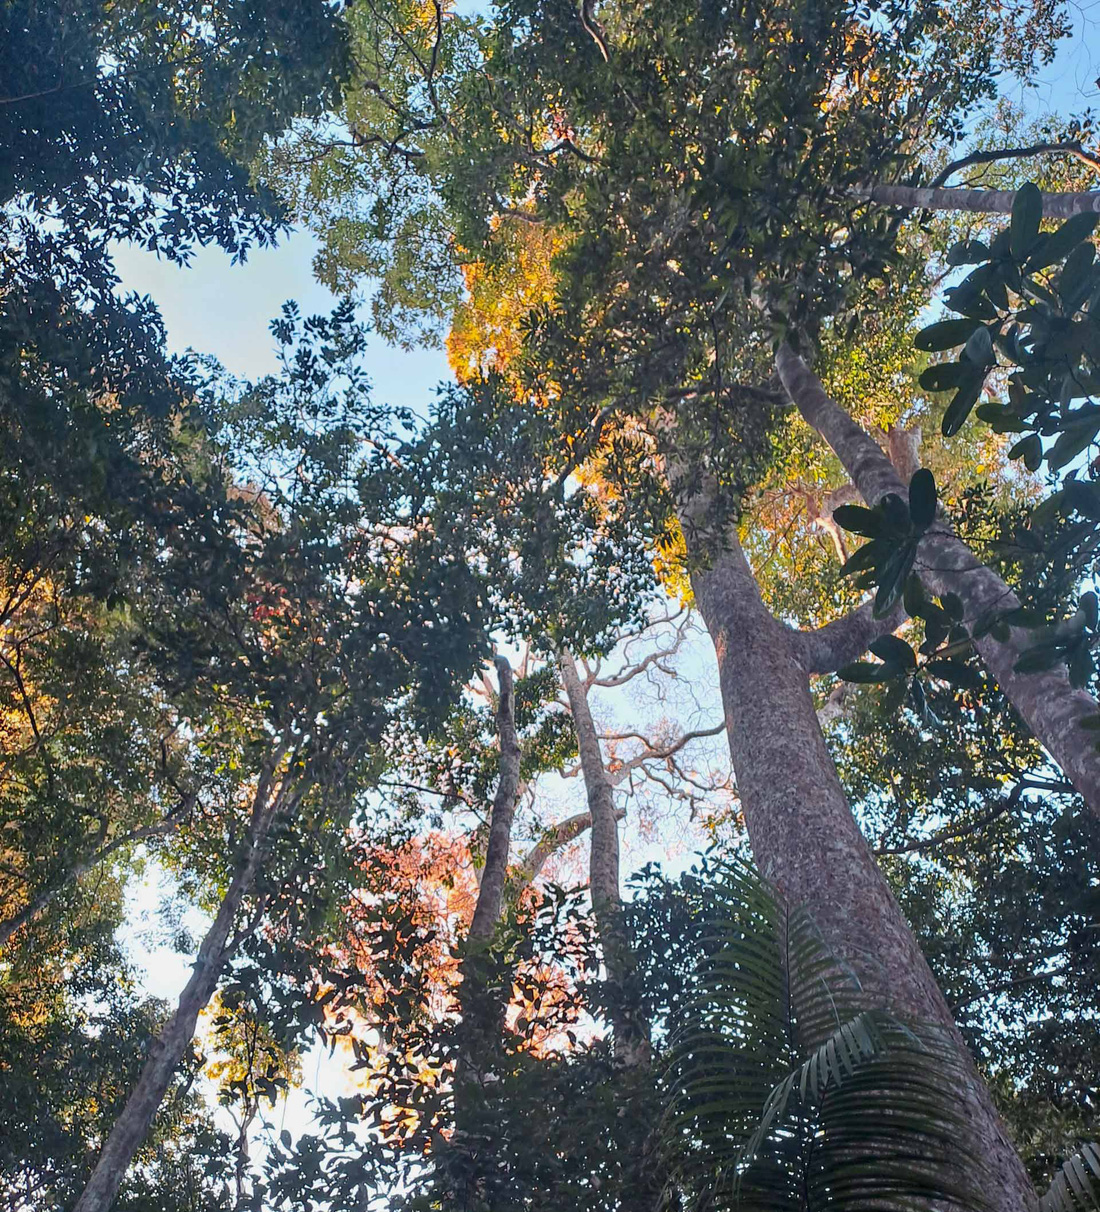 Rừng cây gỗ lớn ở Vườn quốc gia Bù Gia Mập - Ảnh: KIỀU ĐÌNH THÁP